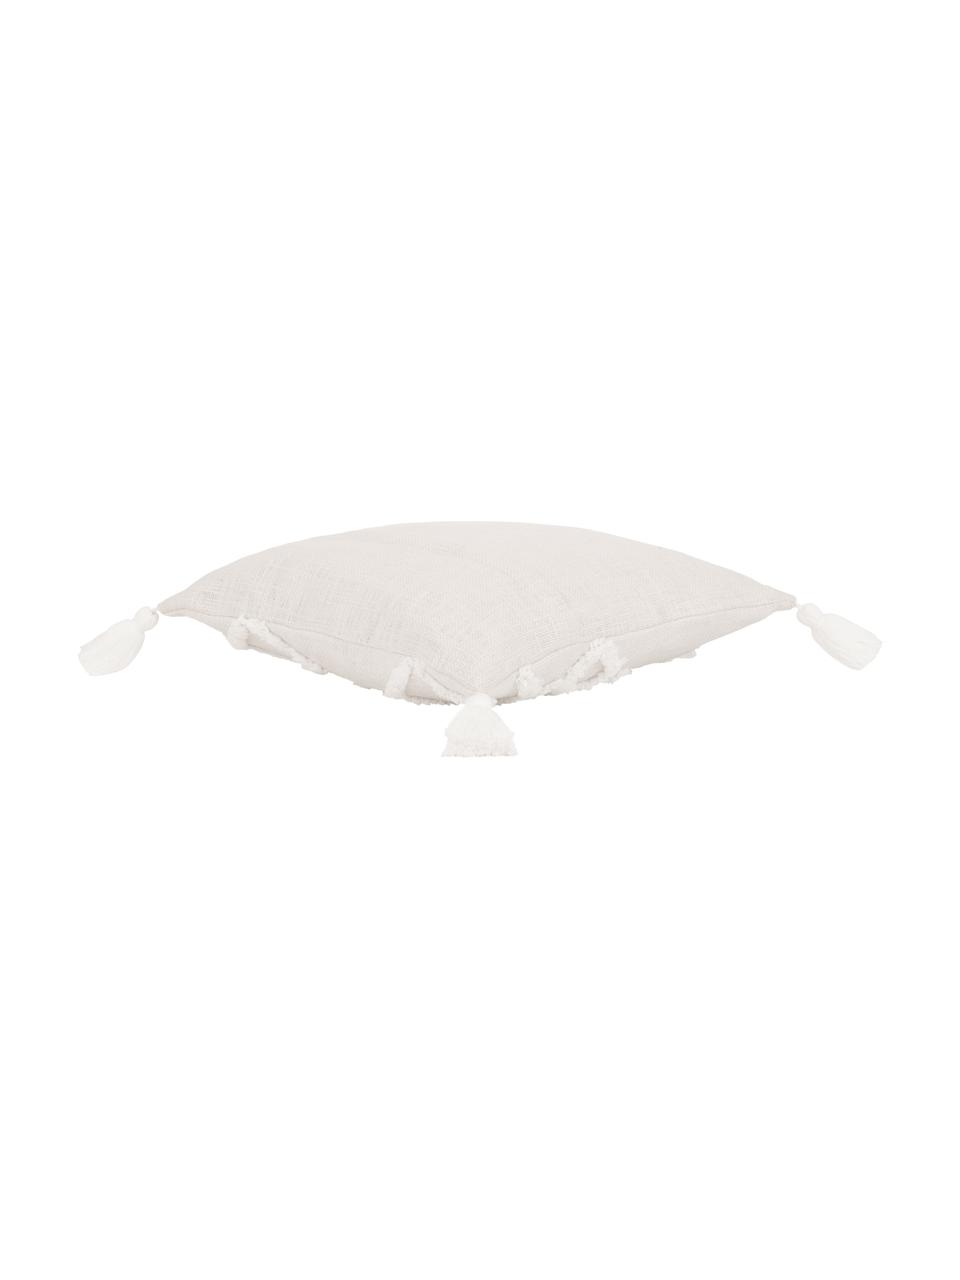 Kissenhülle Tikki mit getufteter Verzierung, 100% Baumwolle, Beige, Weiß, B 40 x L 40 cm